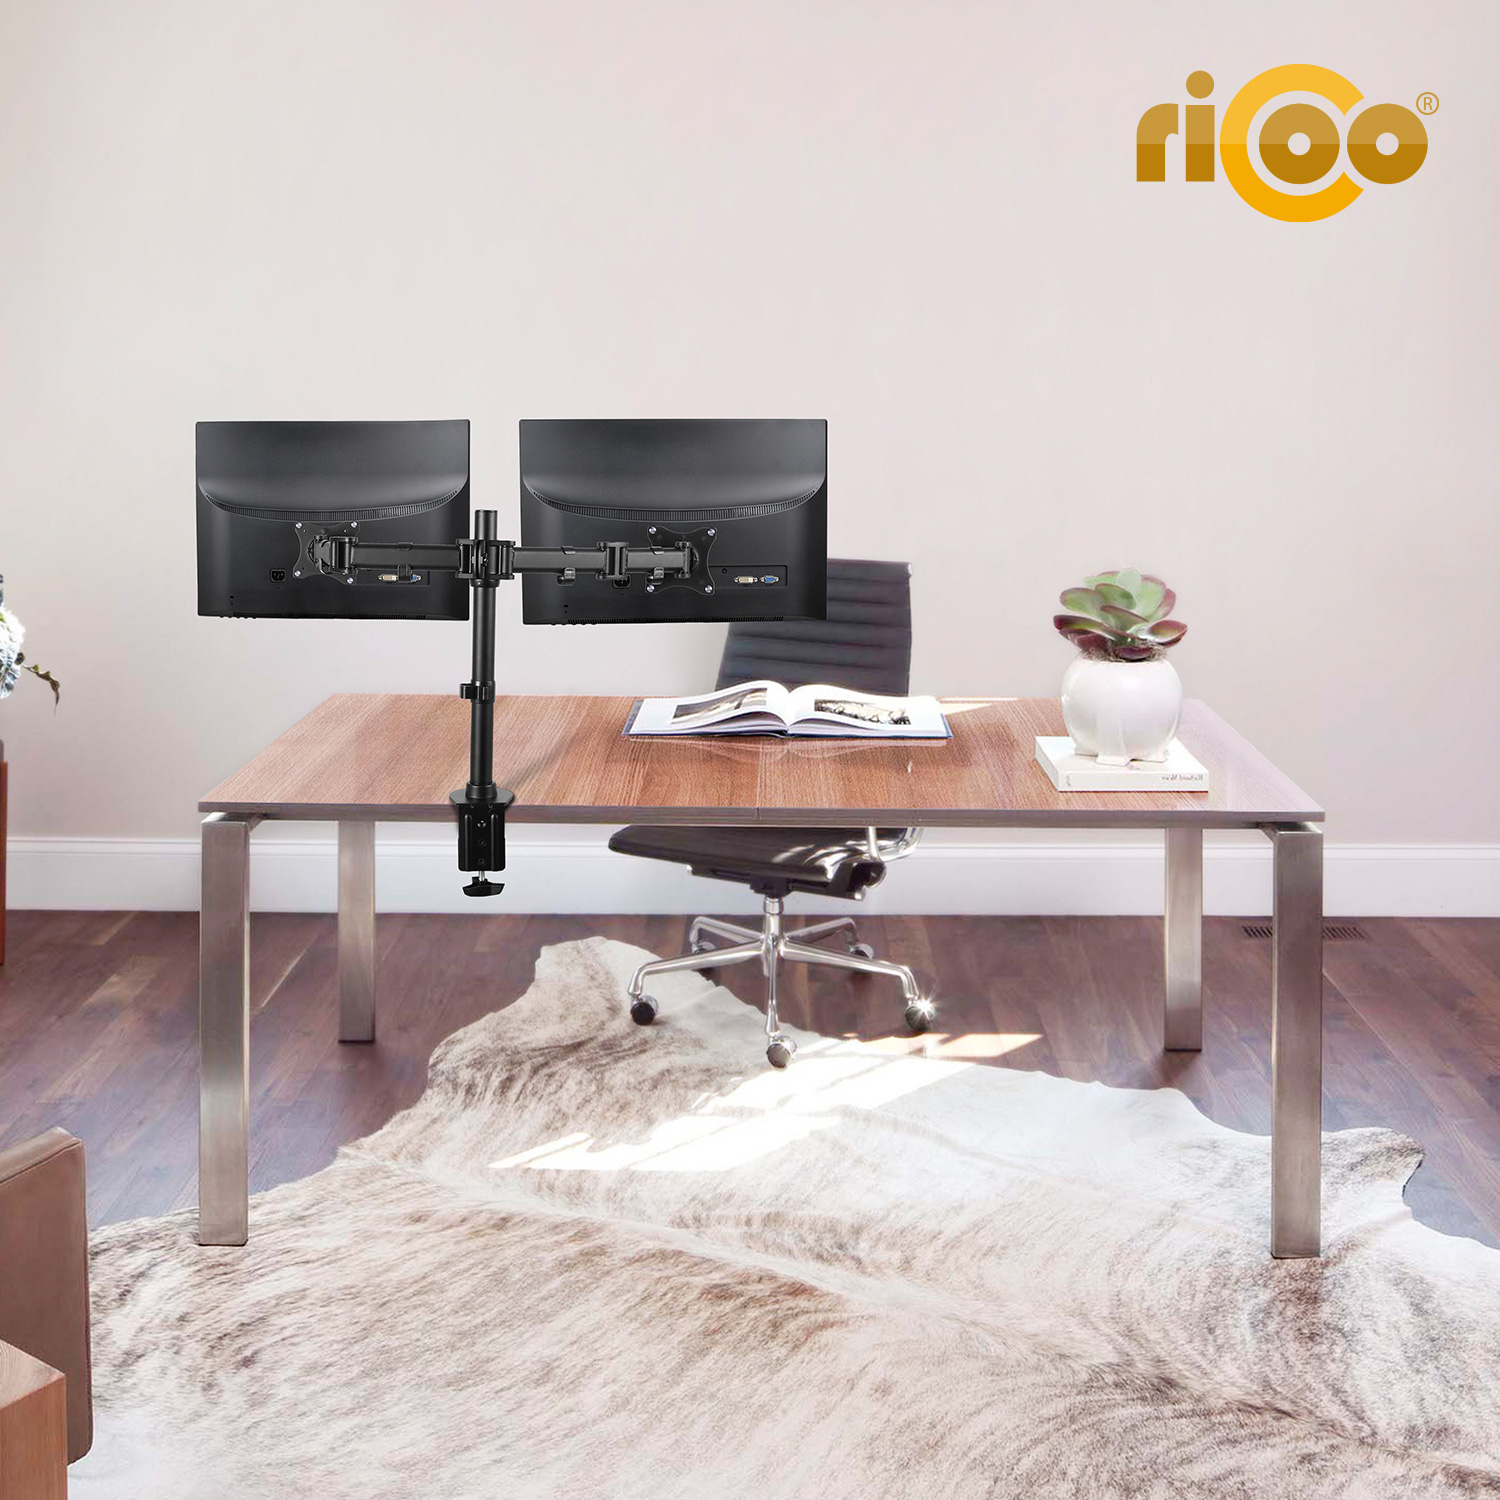 RICOO TS5811 Tischhalterung, schwarz Monitor